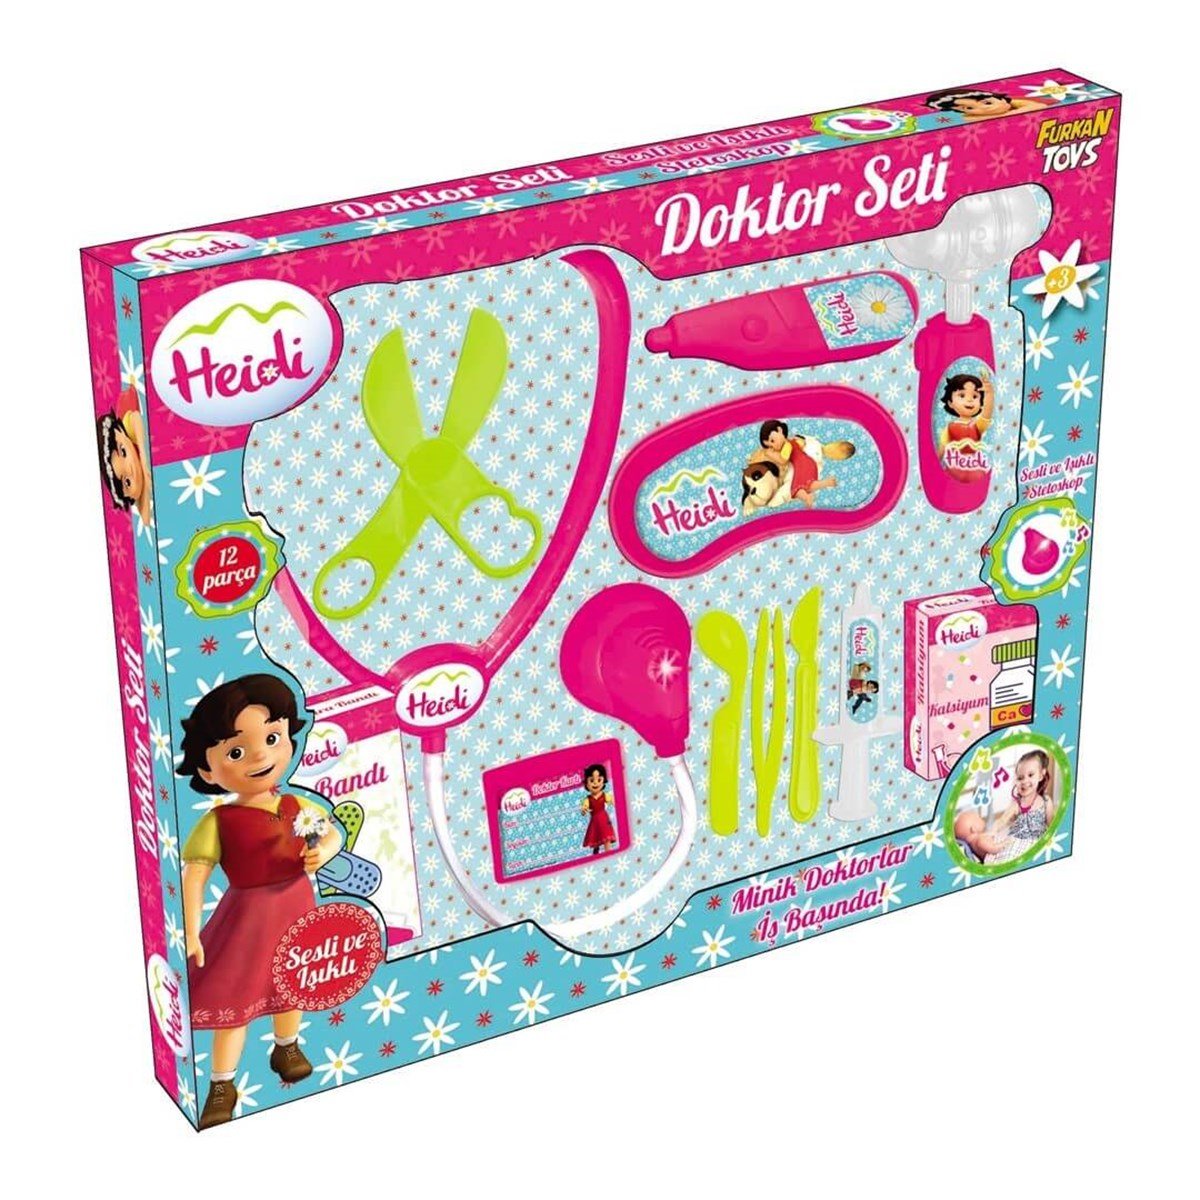 Heidi Doktor Seti Sesli ve Işıklı en uygun fiyatlarla Dobişko Oyuncak'ta!